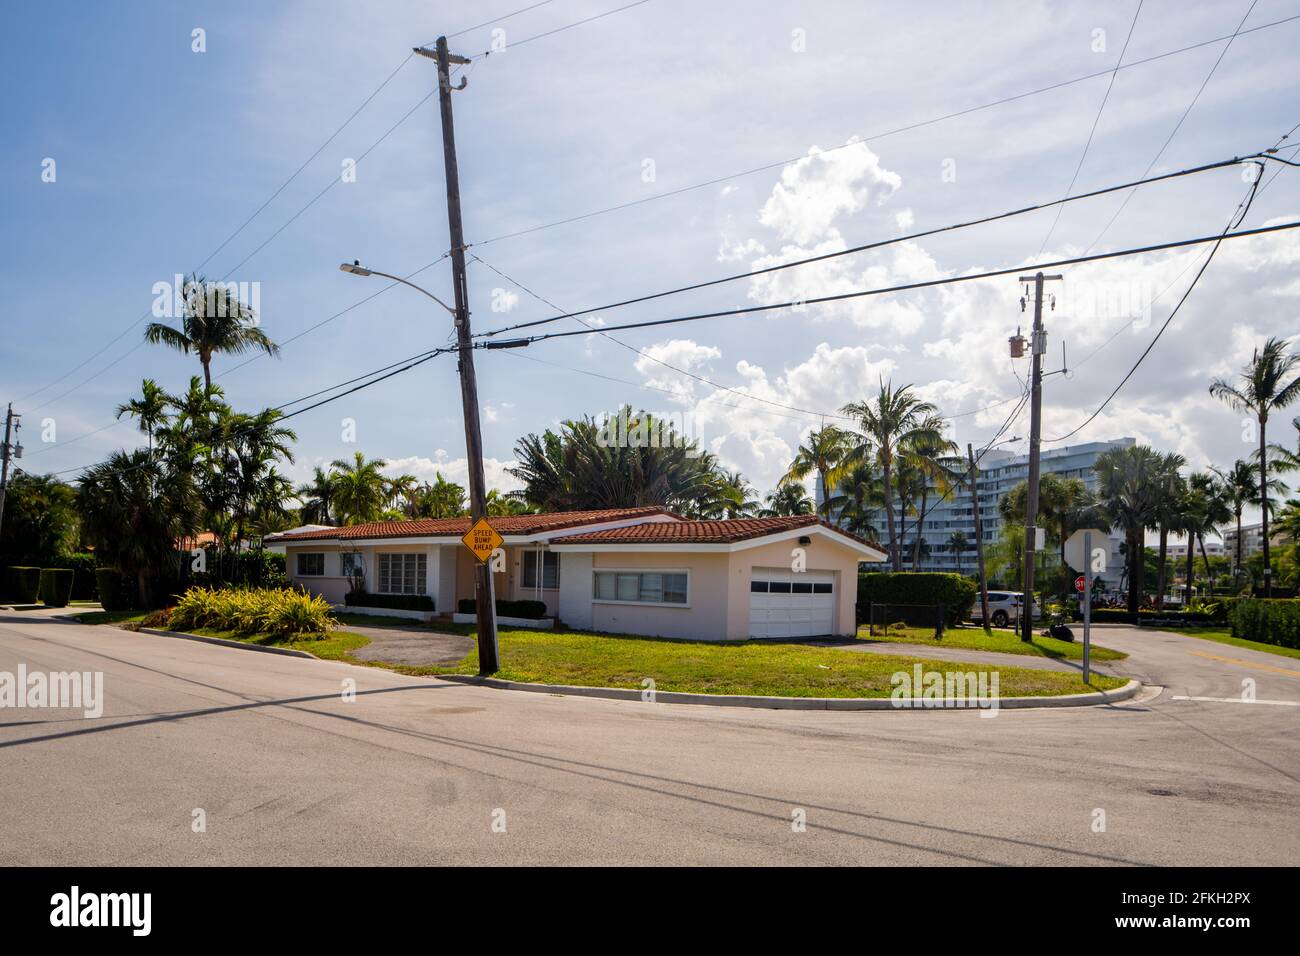 Surfside Miami, FL, USA - 1 mai 2021: Série de photos de maisons unifamiliales à Surfside qui est une subdivision de Miami Dade County Banque D'Images